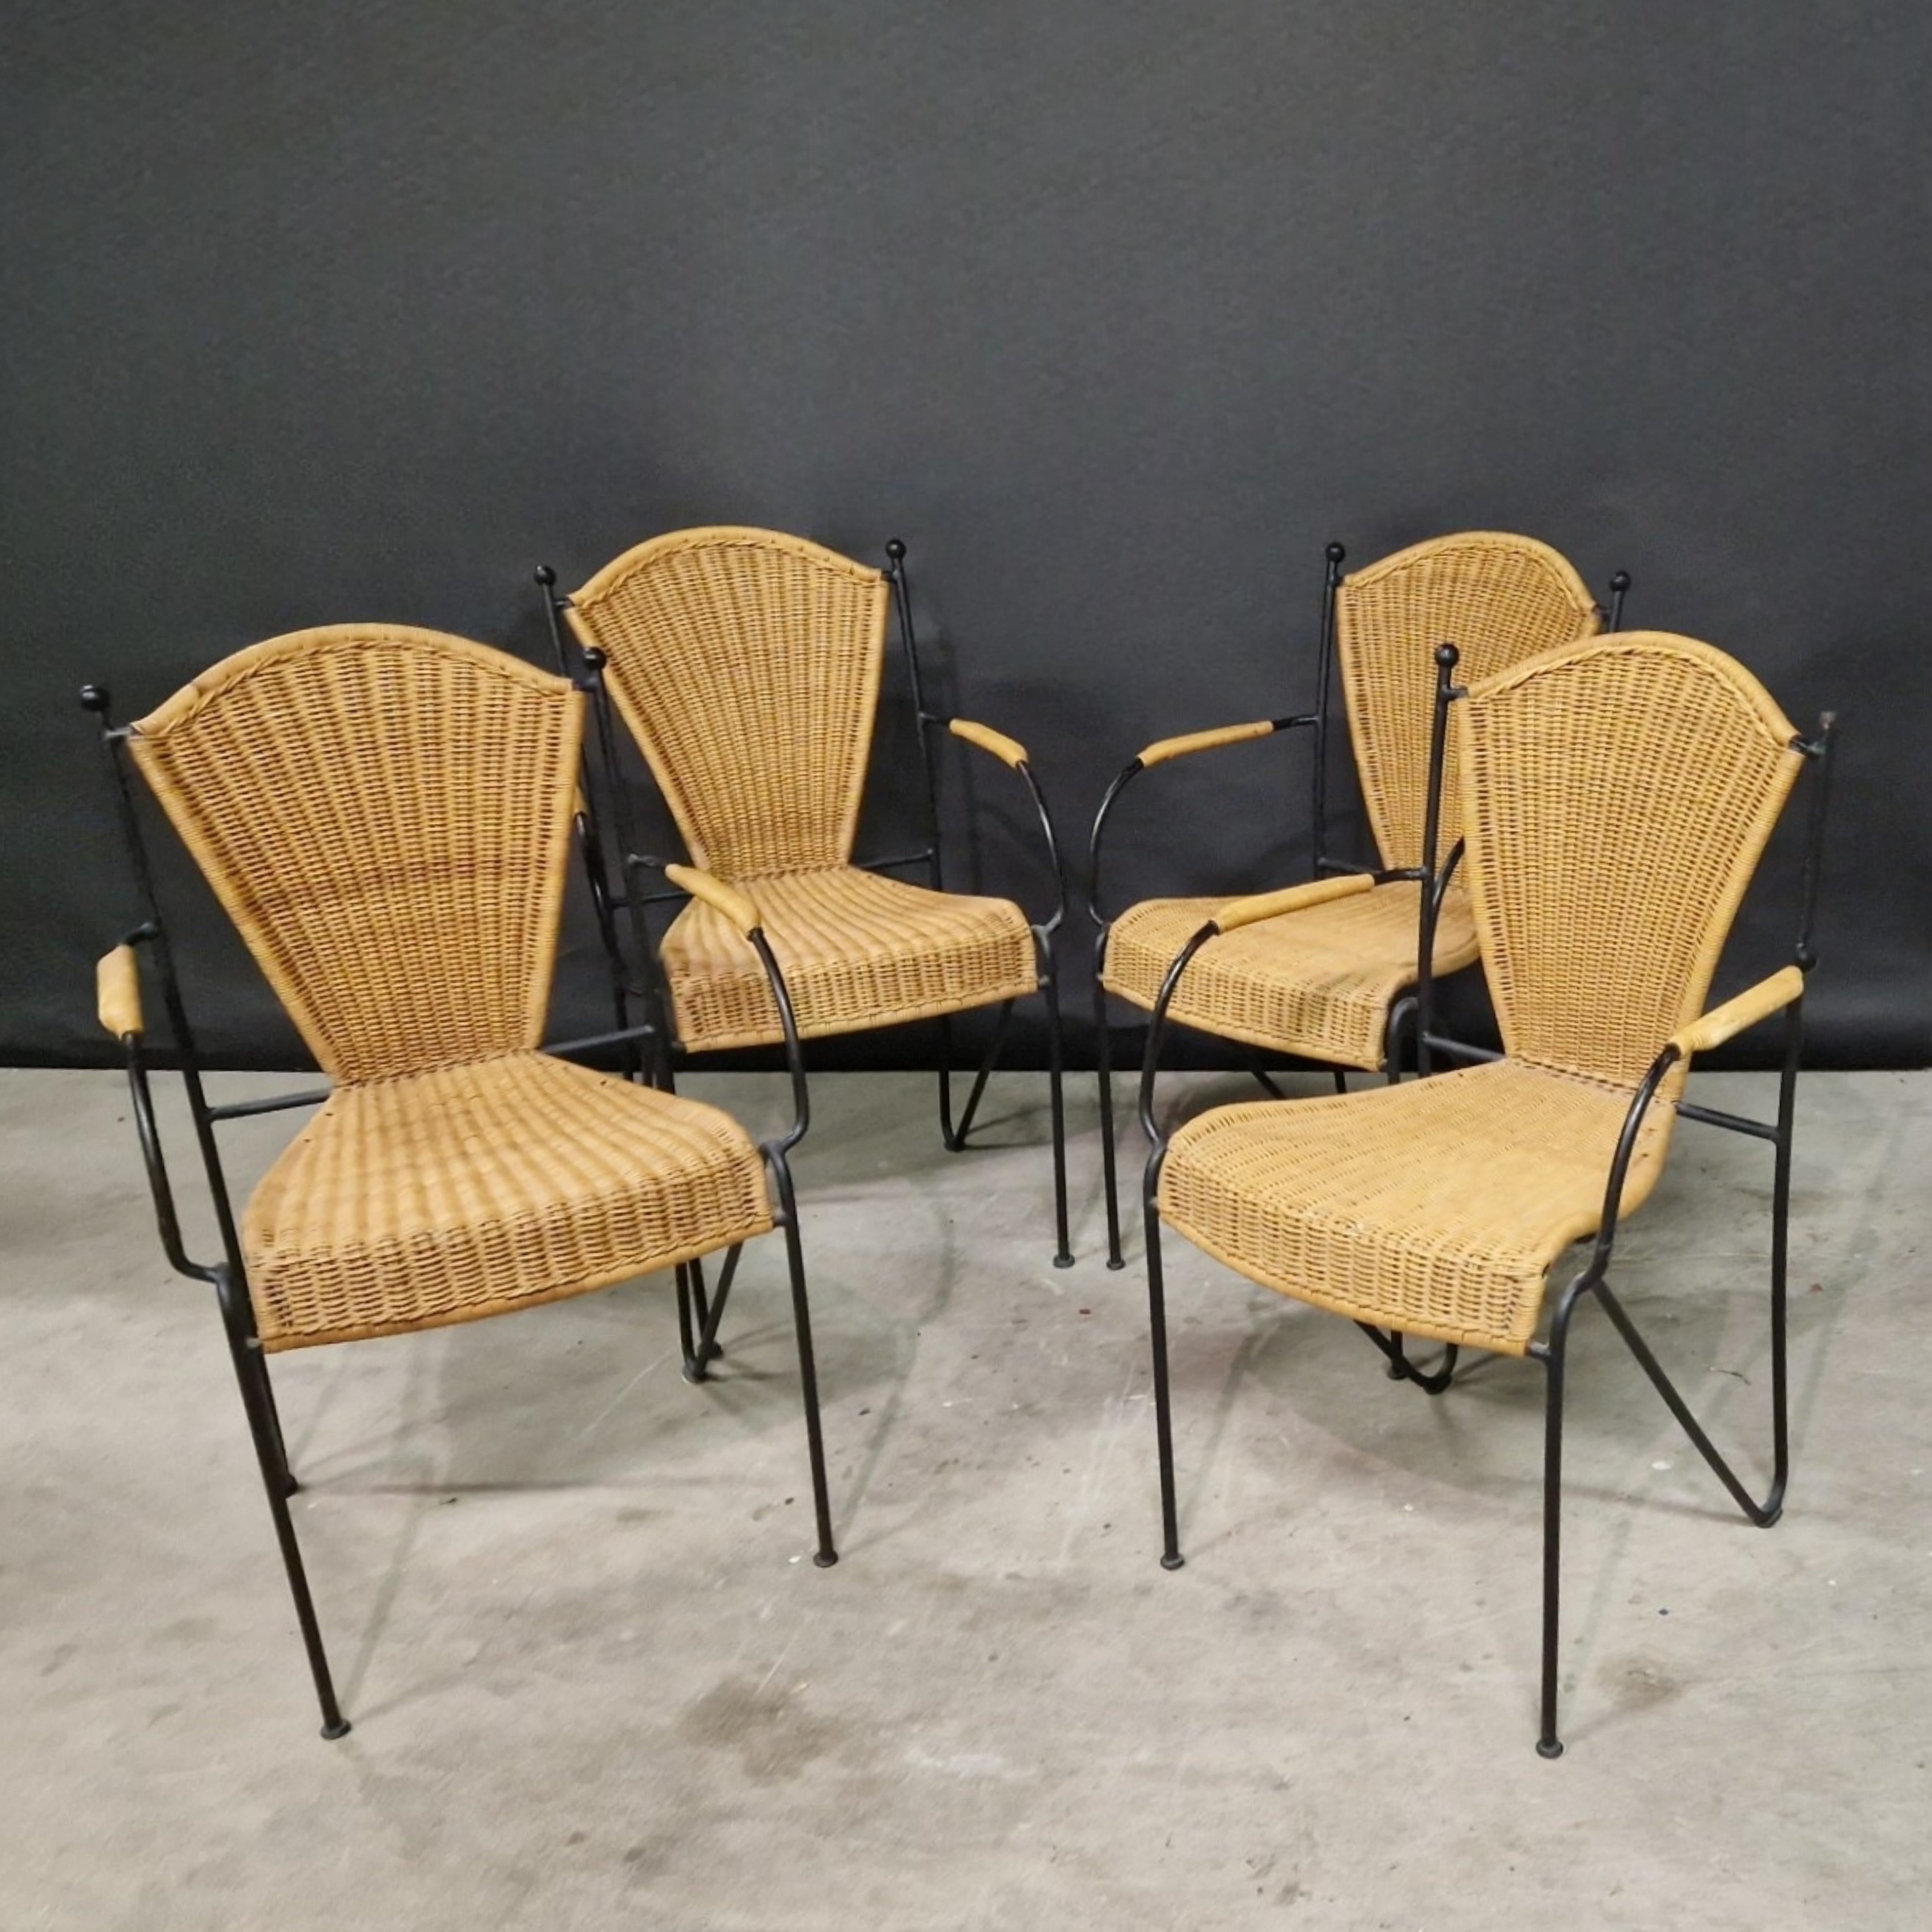 Satz von 8 französischen Esszimmerstühlen. Die Gestelle sind aus massivem Schmiedeeisen und die Sitze aus Korbgeflecht gefertigt. Handgefertigt in den 1960er Jahren und immer noch in einem erstaunlichen Zustand, schwere Qualität gemacht Stücke.